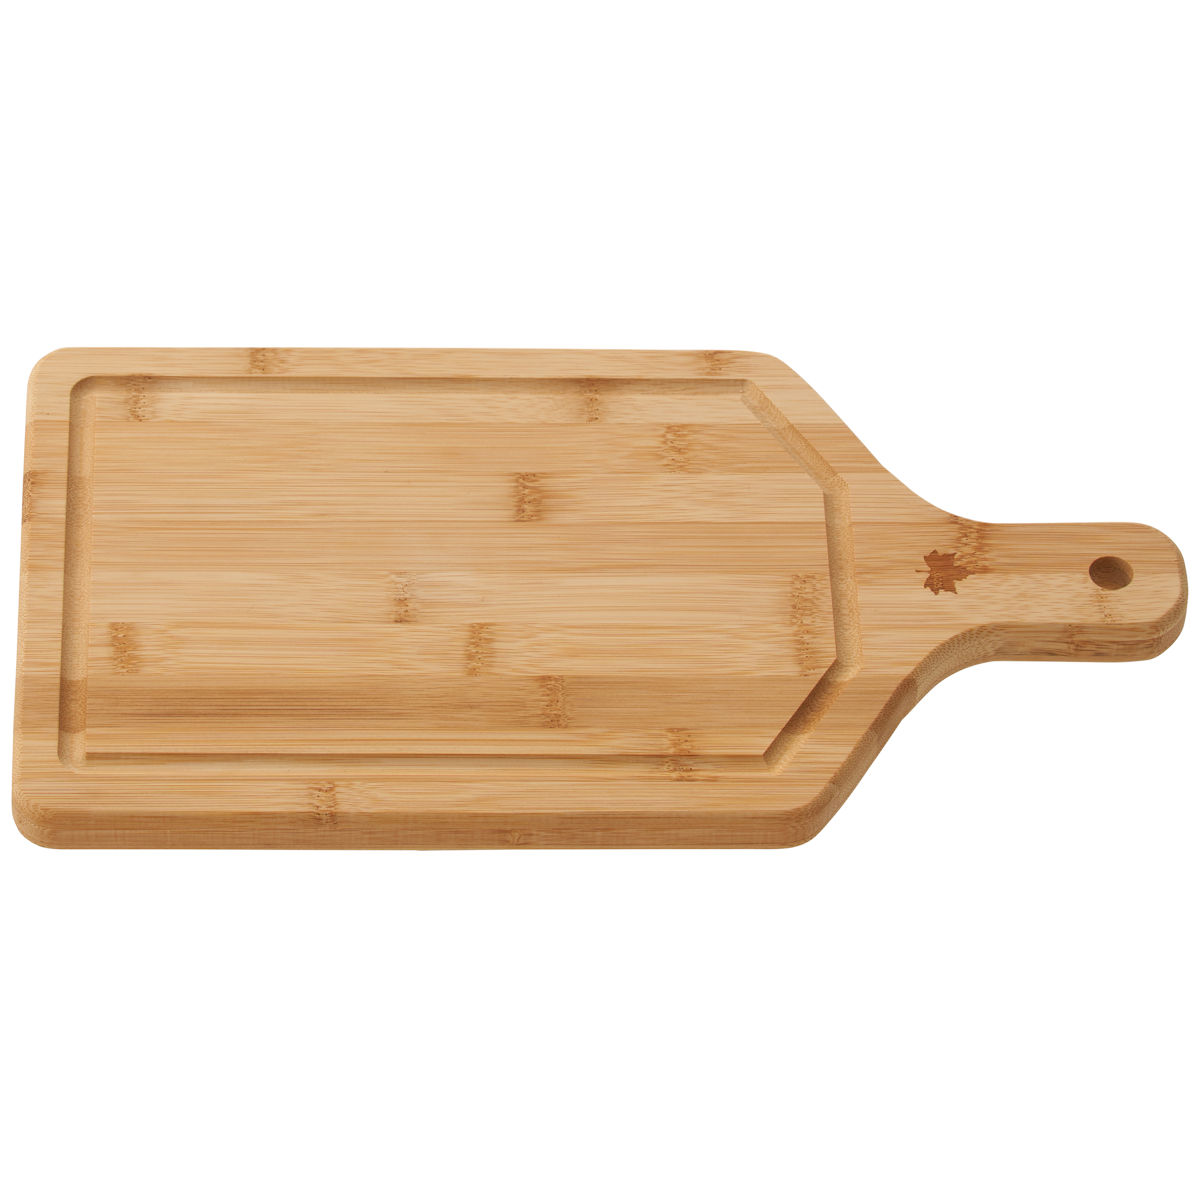 Bamboo 柄付きまな板|ギア|キッチンウェア|調理器具|製品情報|ロゴス 